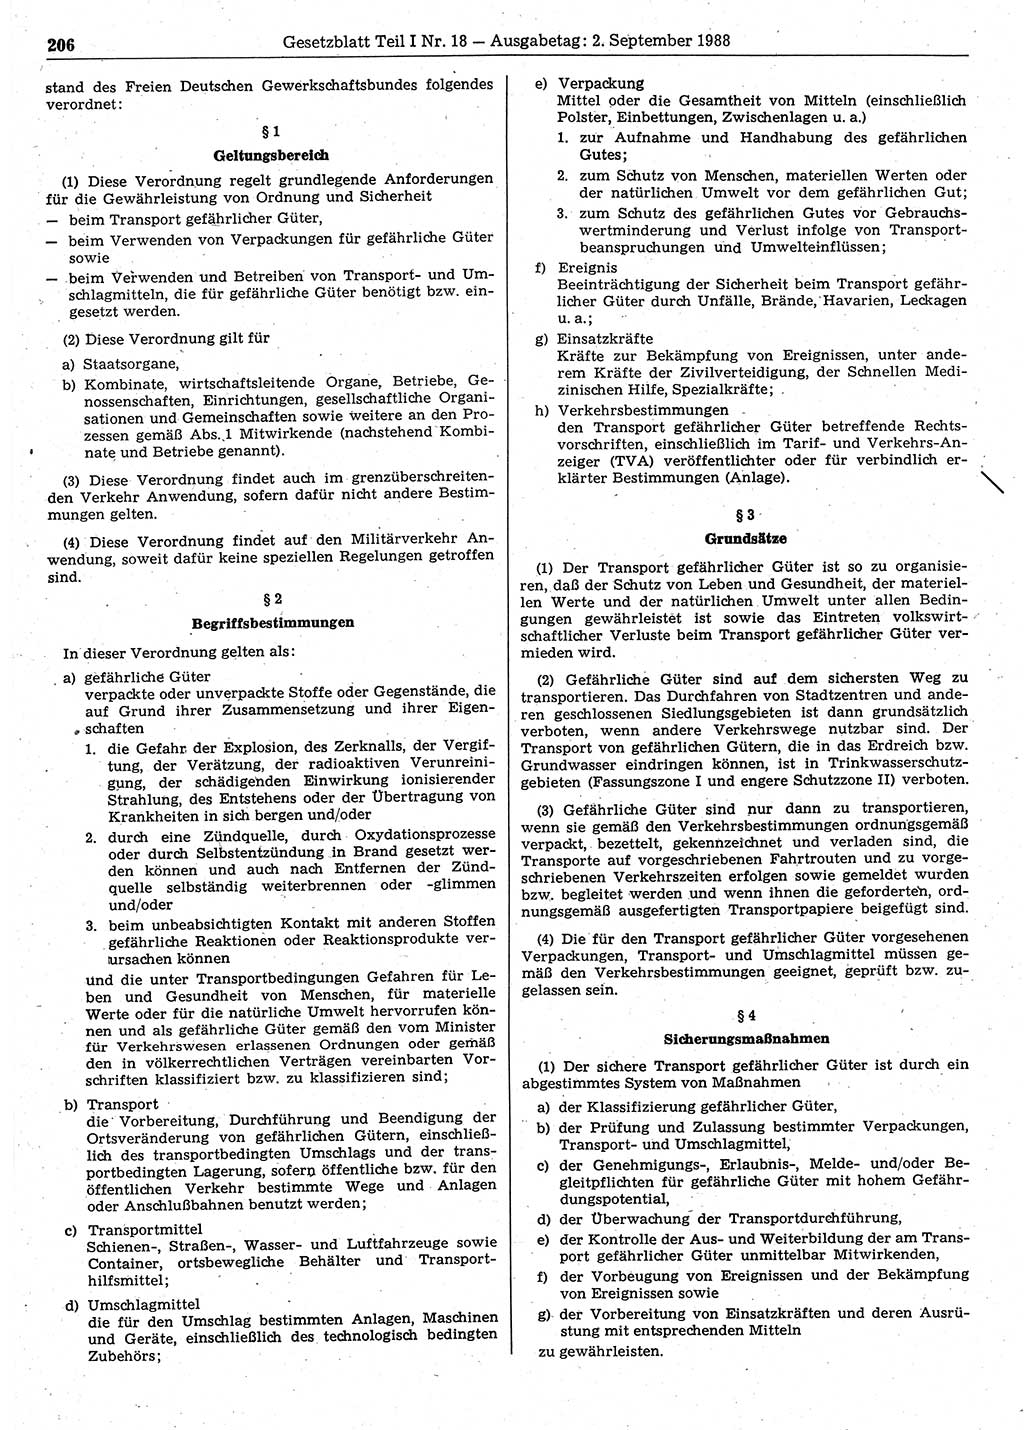 Gesetzblatt (GBl.) der Deutschen Demokratischen Republik (DDR) Teil Ⅰ 1988, Seite 206 (GBl. DDR Ⅰ 1988, S. 206)